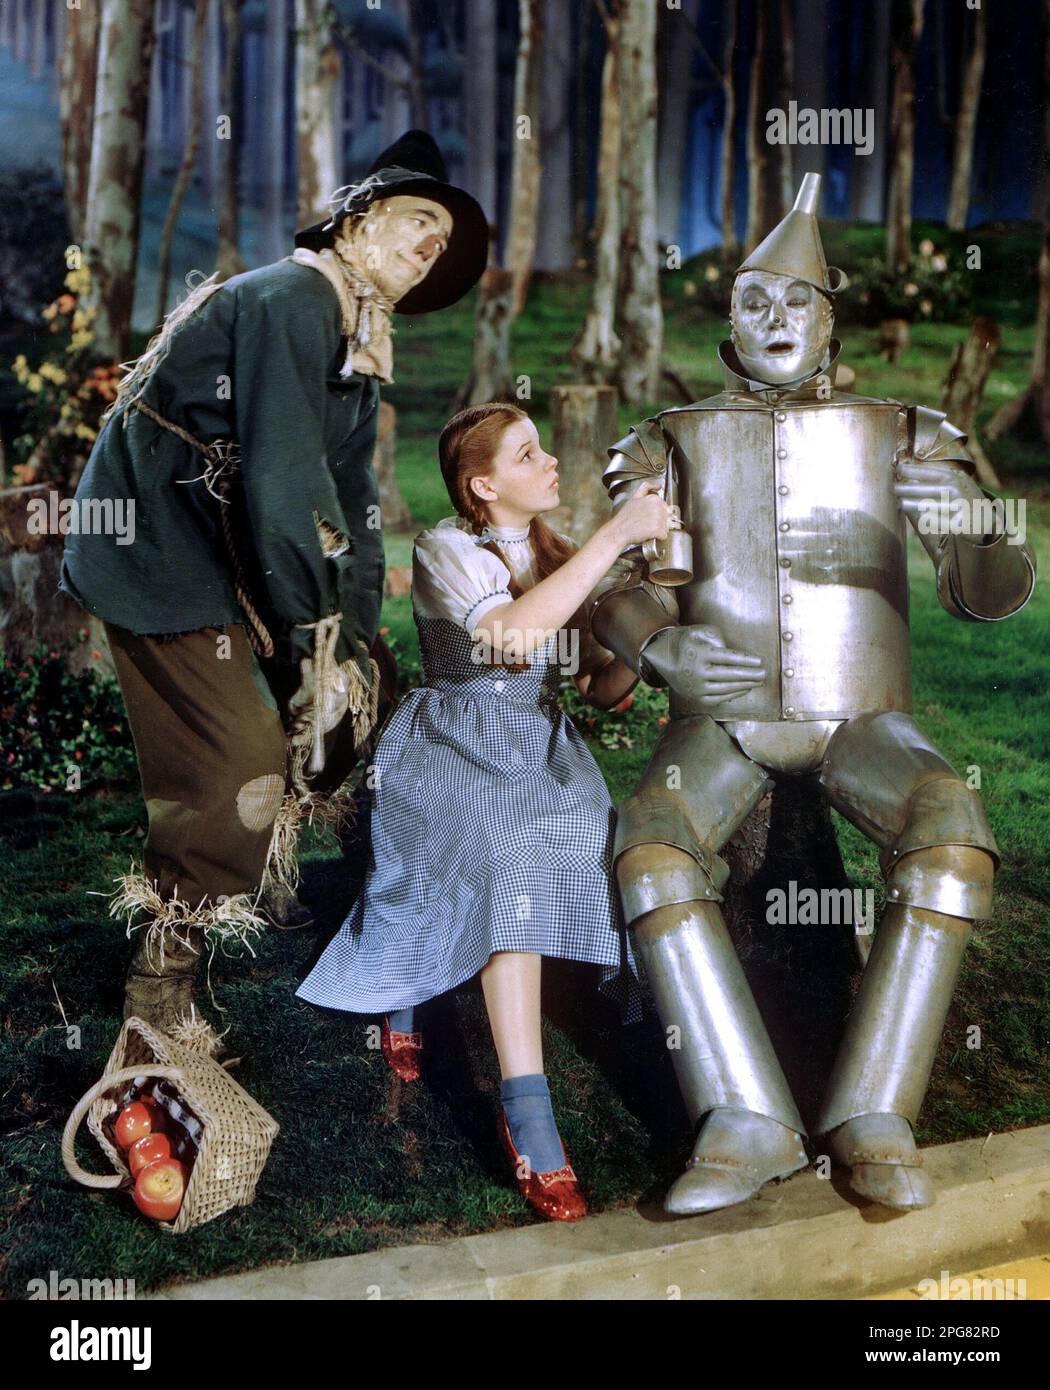 The Wizard Of Oz 1939 Scarecrow, Dorothy & Tin Man Stock Photo